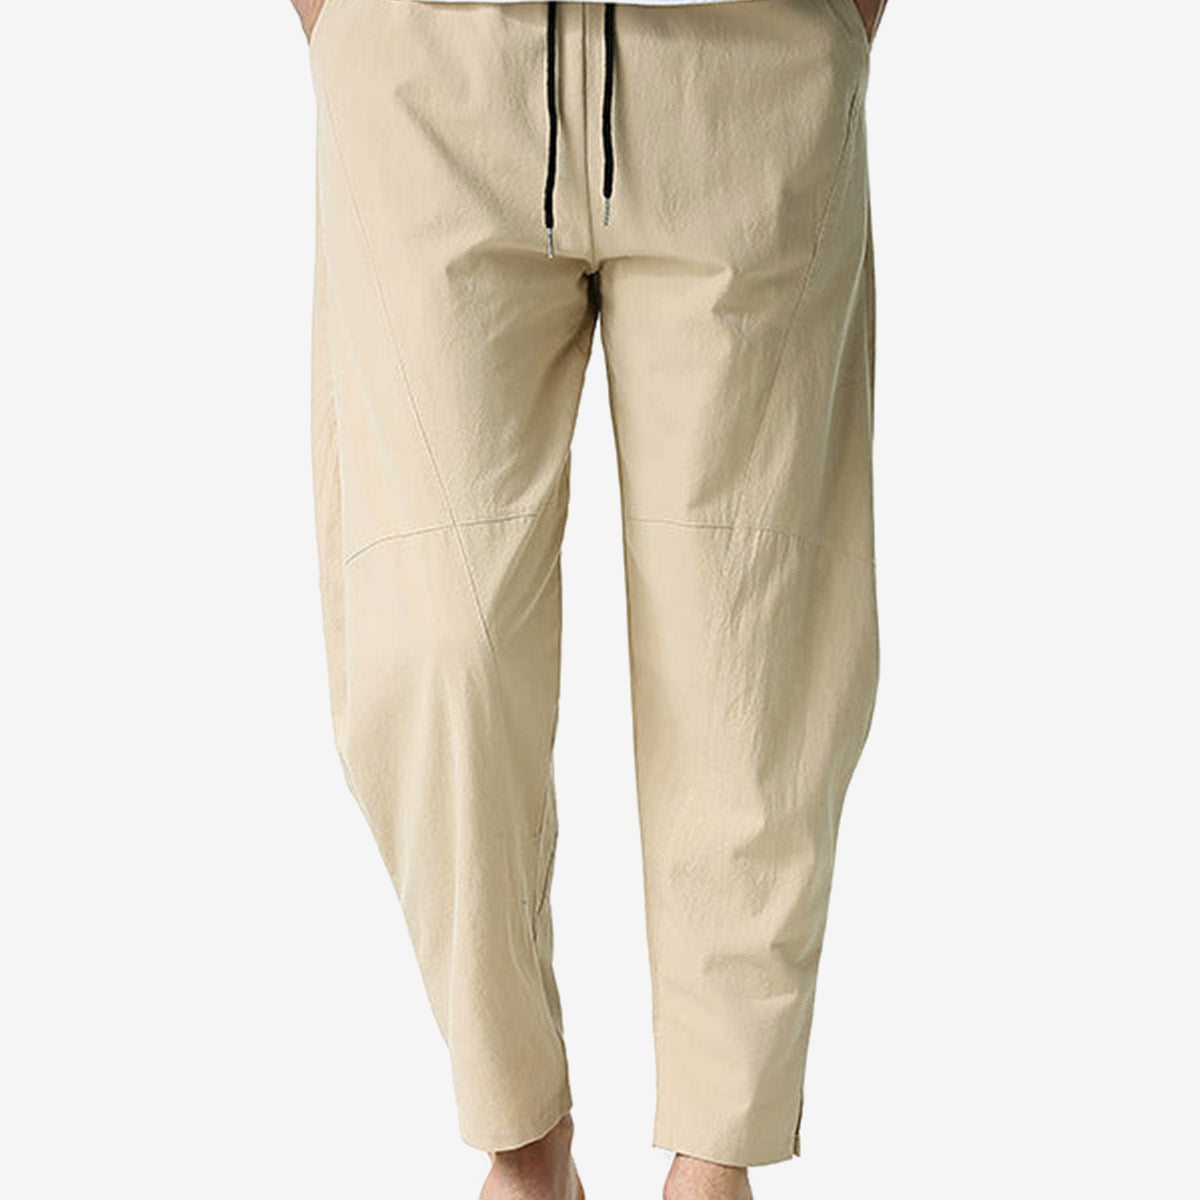 Pantalon ample décontracté léger en coton pour hommes, taille élastique